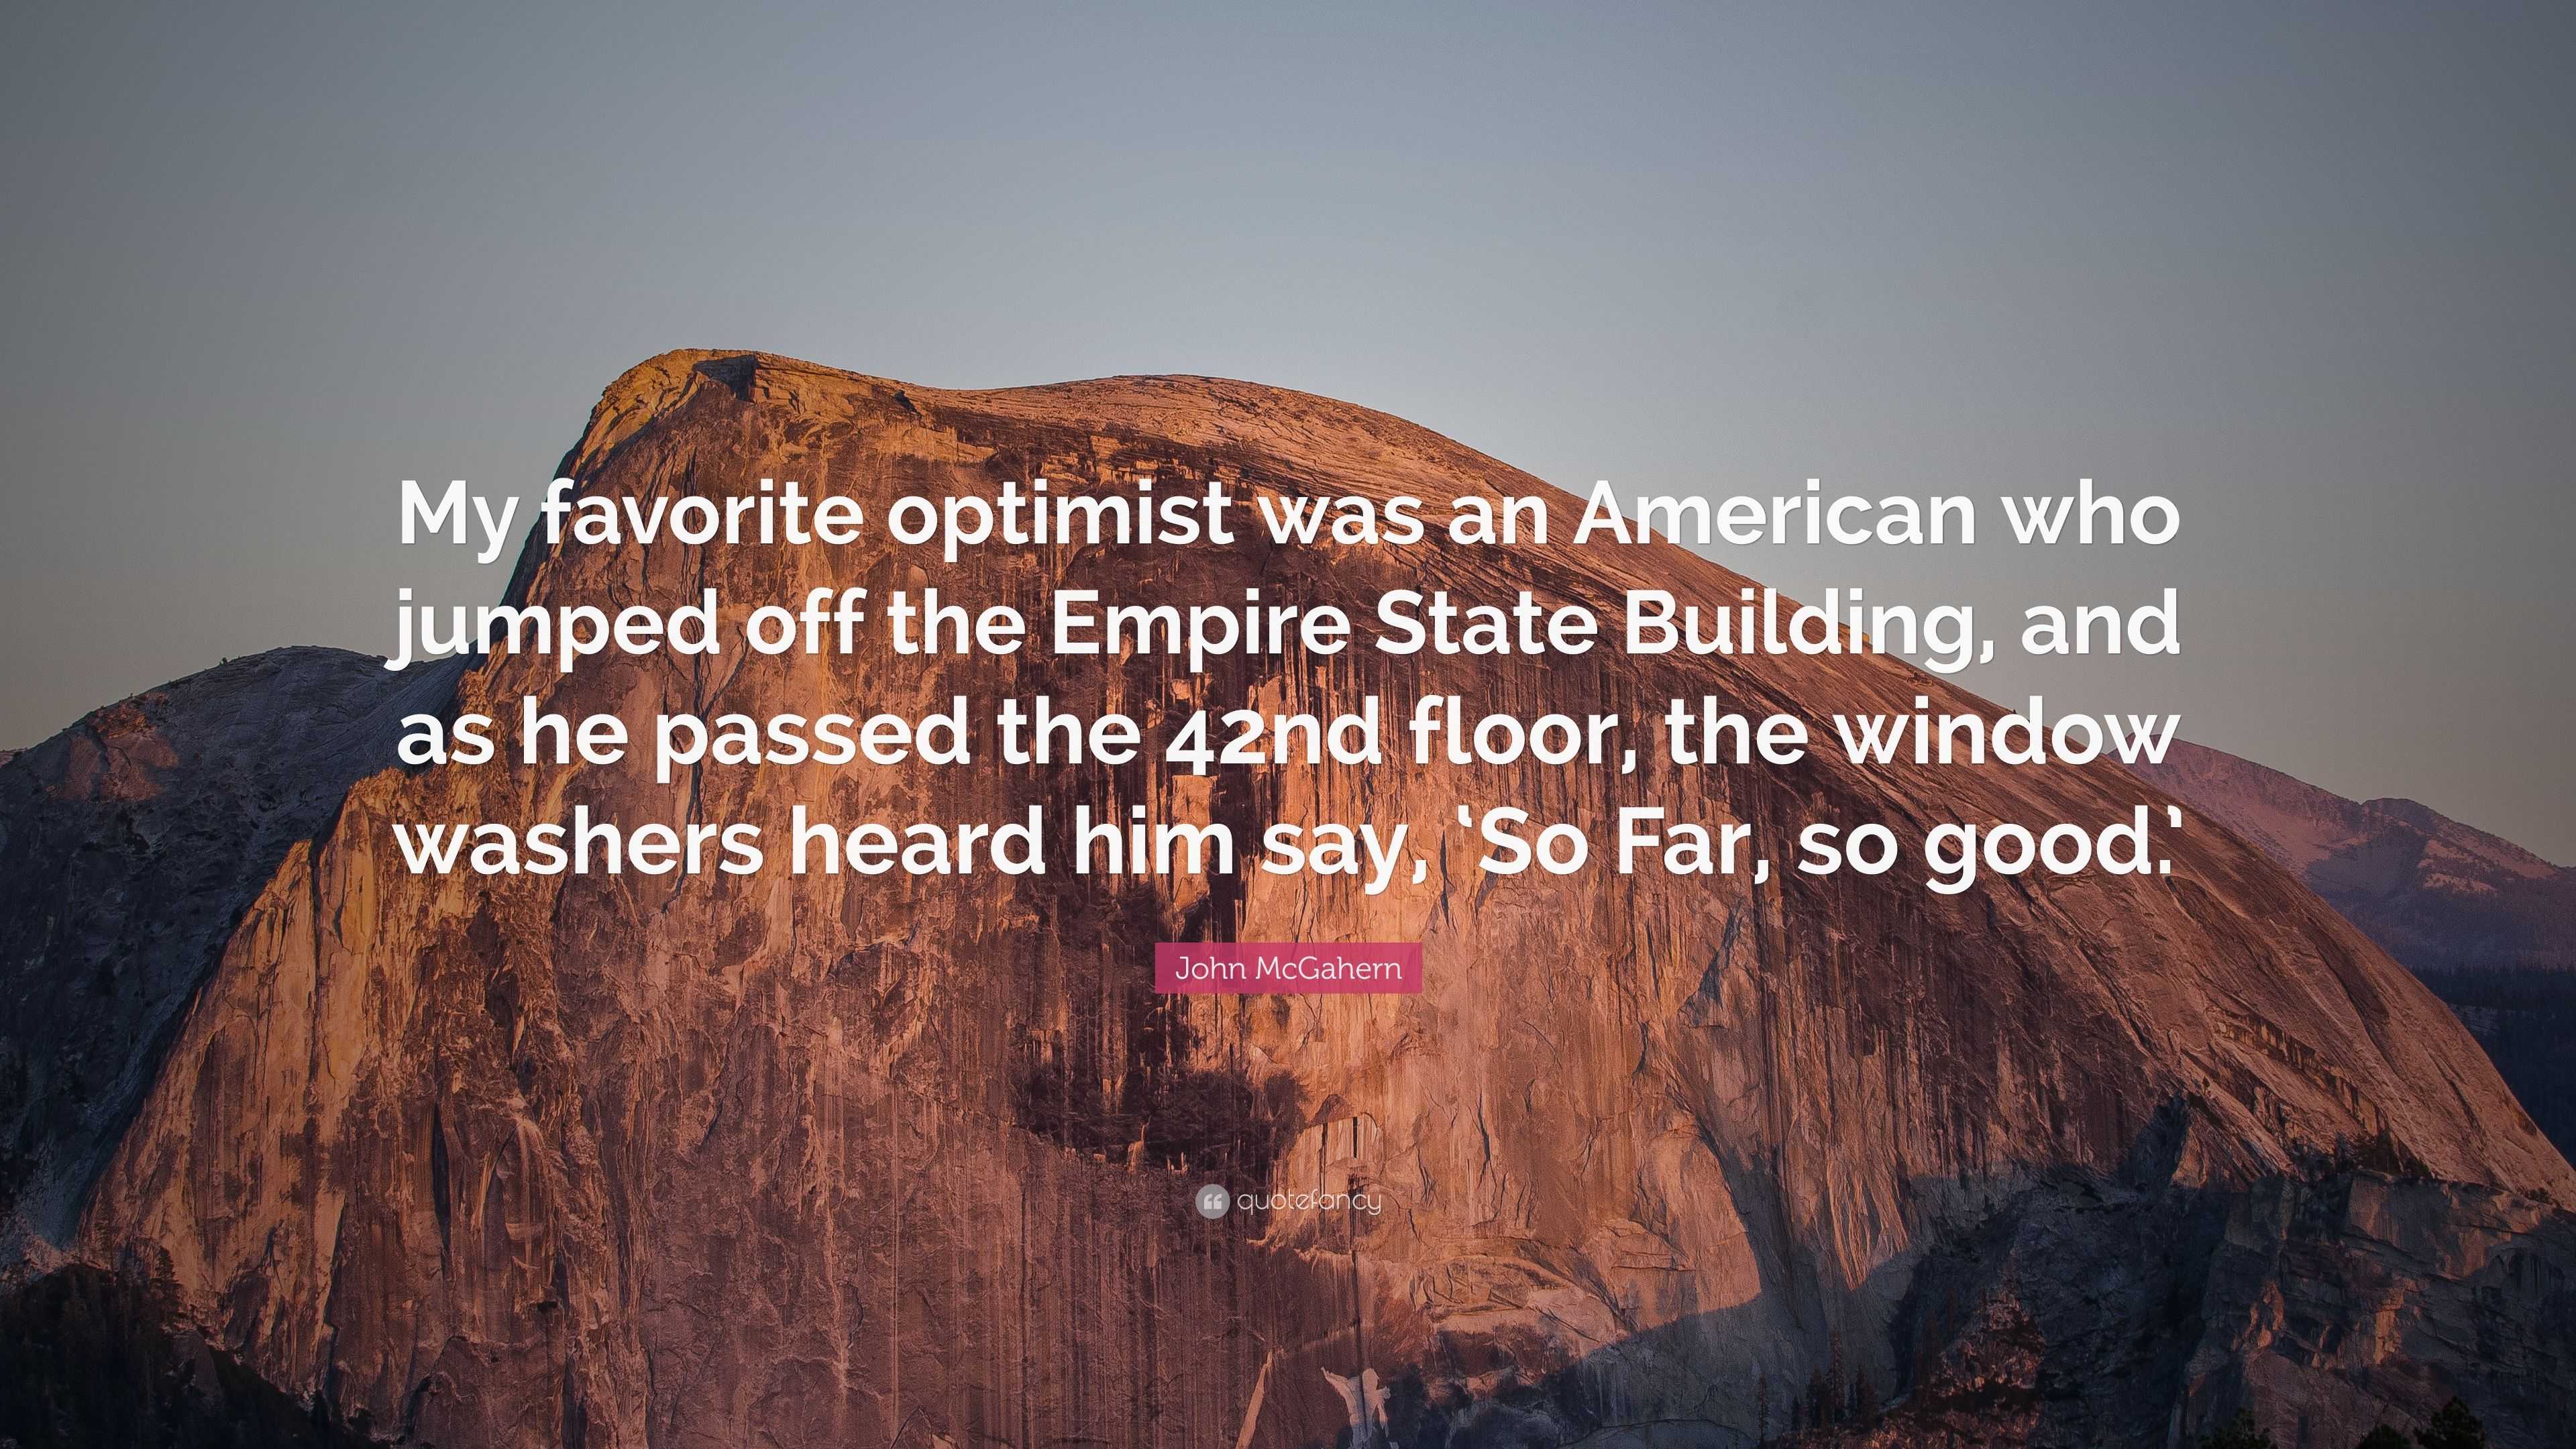 american optimism